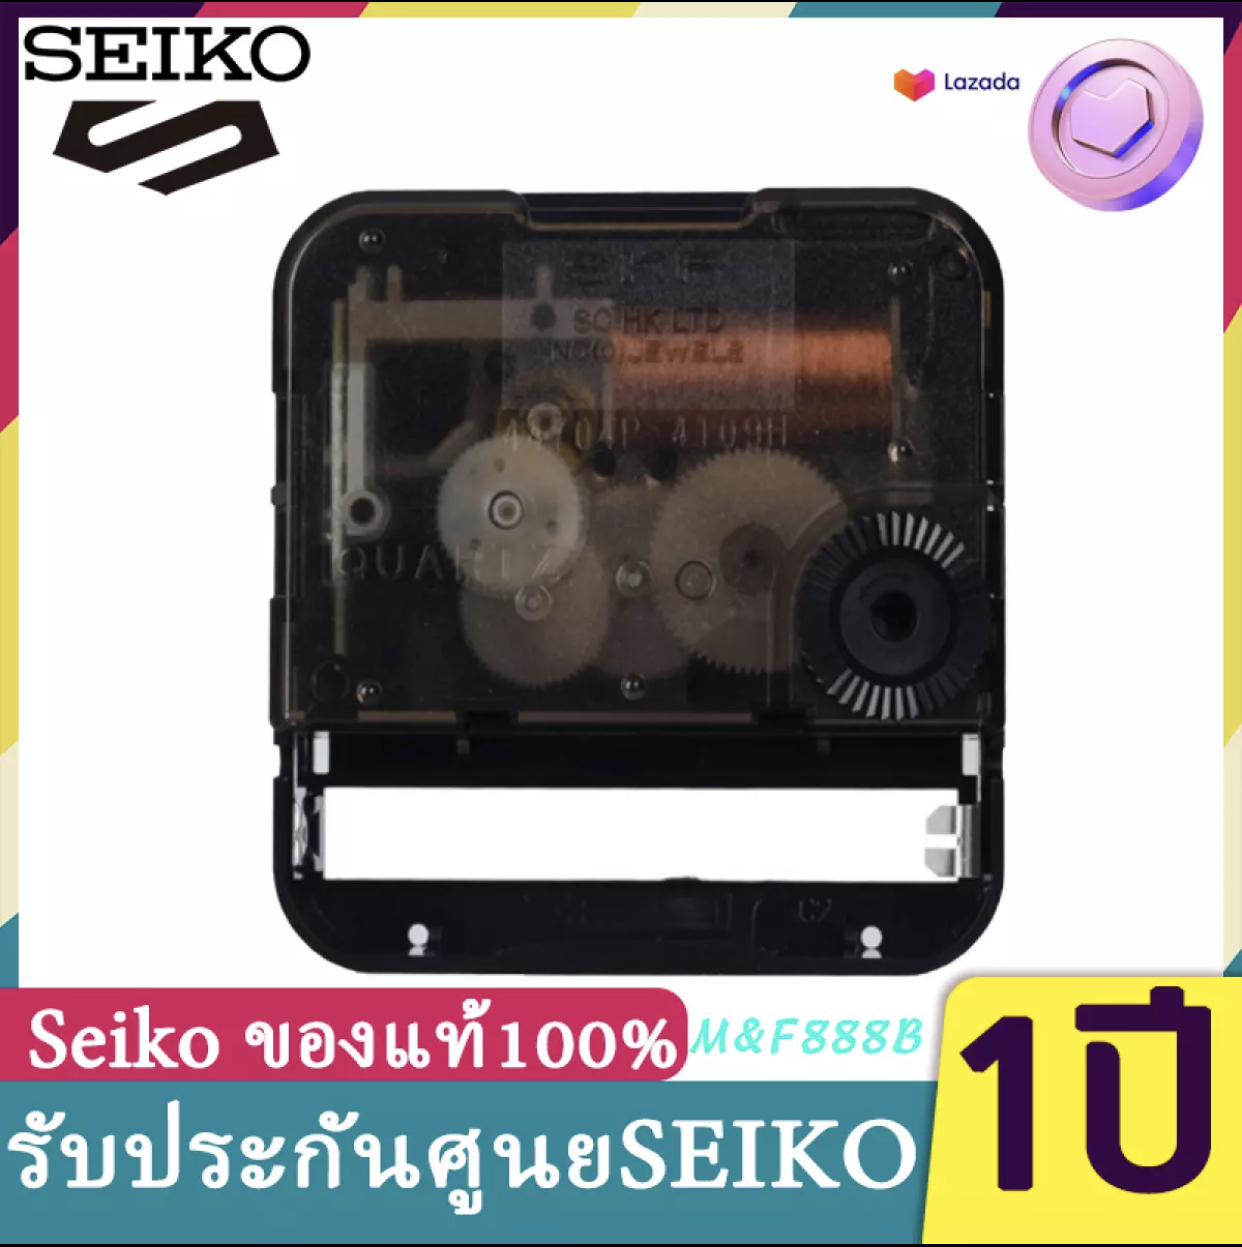 พร้อมส่ง  เครื่องนาฬิกา SKP Seiko ของแท้ แบบเดินกระตุก แท้ % สามารถใช้ในห้องนอนได้ โดยไม่มี เสียงรบกวน